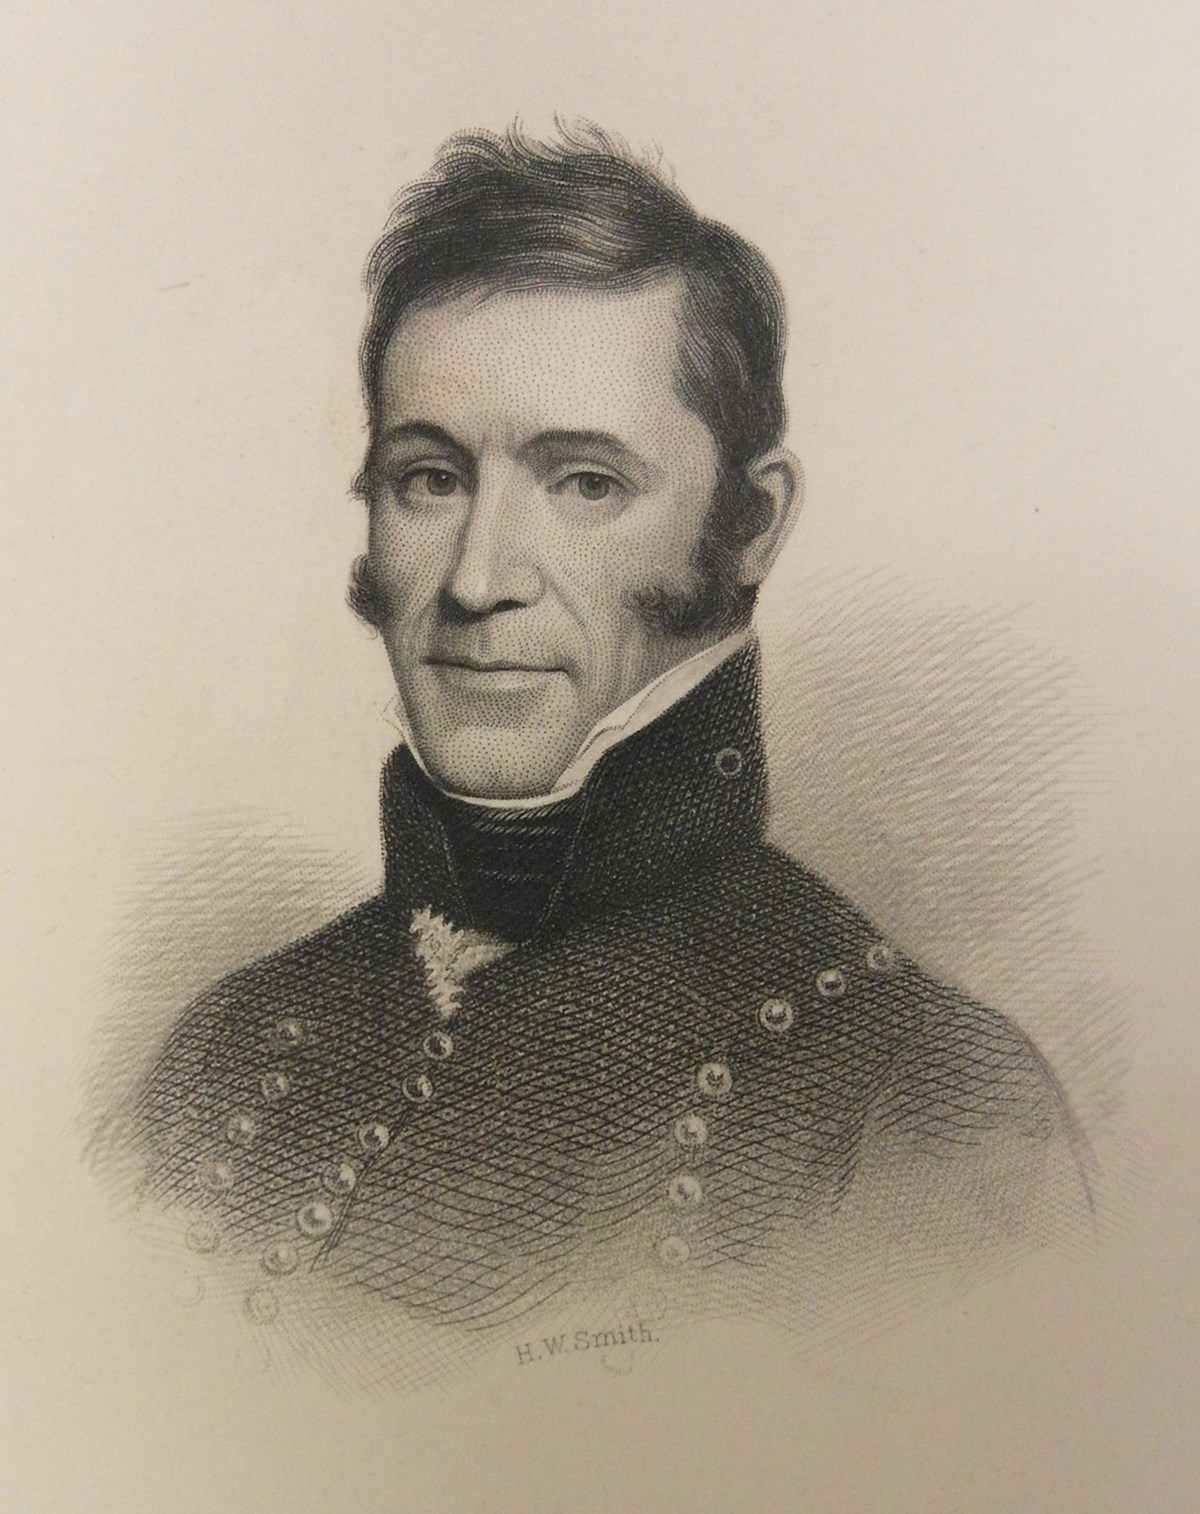 Black and white portrait of Captain Alden Partridge.